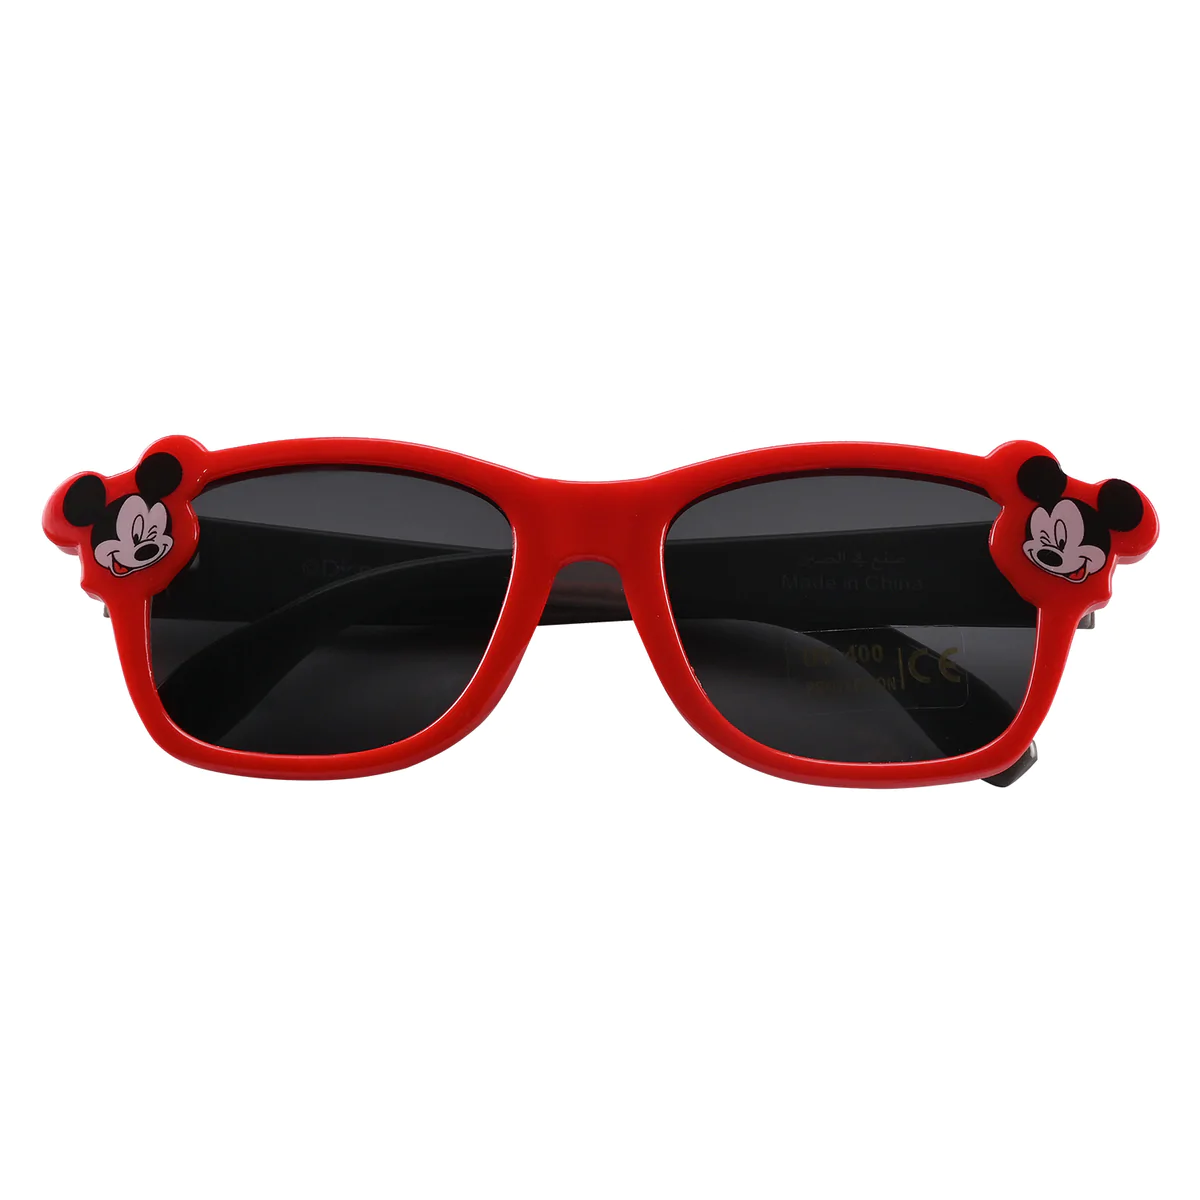 Hawk Ballistic Sunglasses with 3 Interchangable Lens – Olive Planet